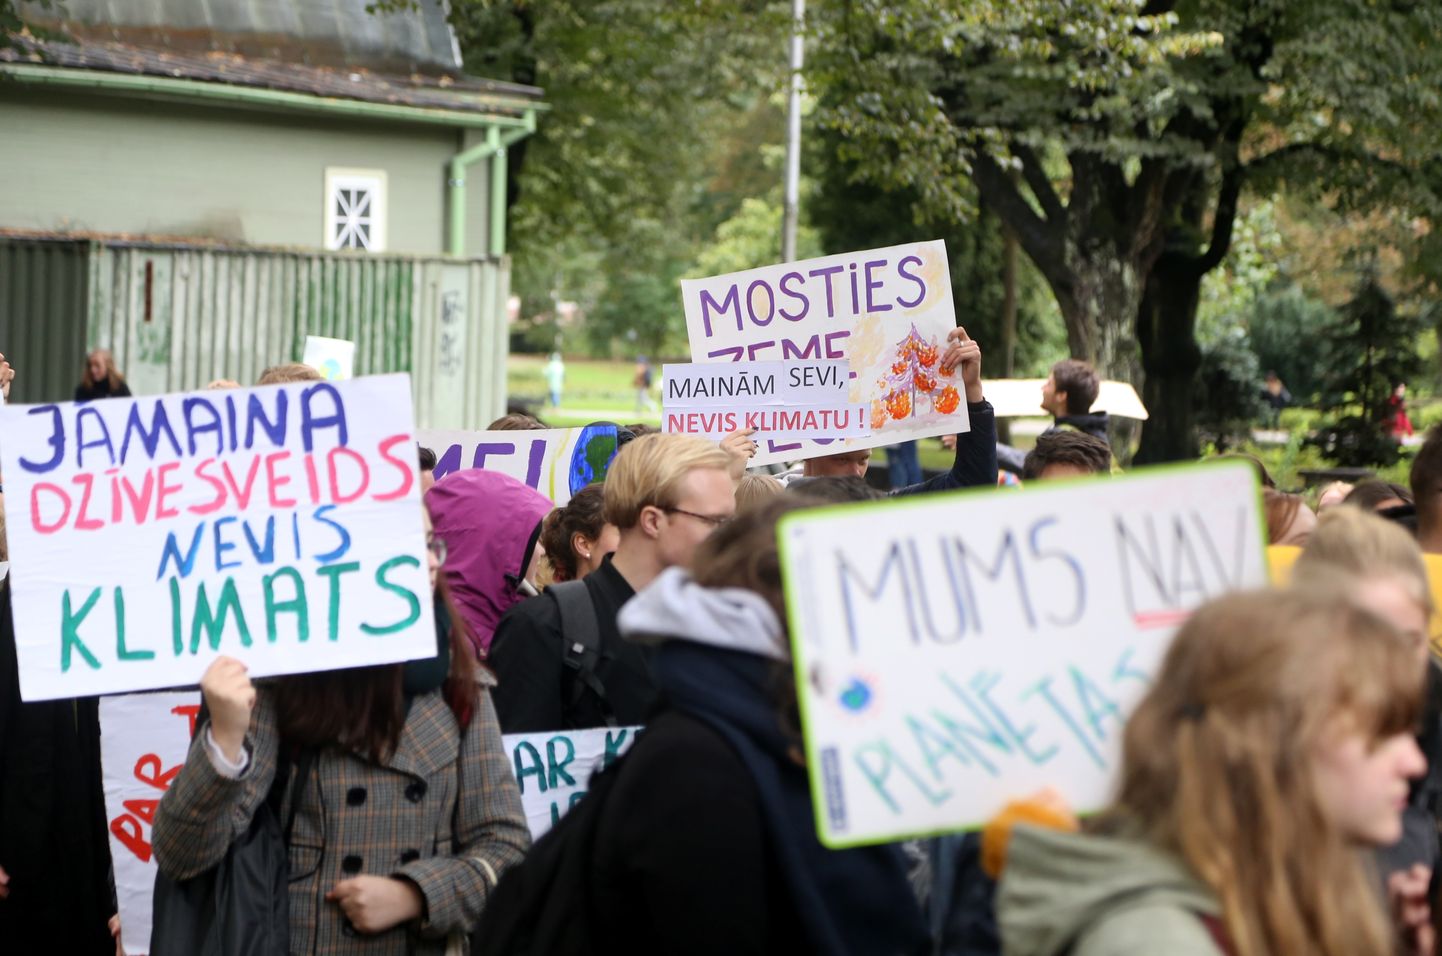 Neformālā jauniešu kustība "Fridays for future Latvia" rīko atvērtu akciju "Gājiens nākotnei", kuras mērķis ir pievērst mediju un politiķu uzmanību klimata krīzei.